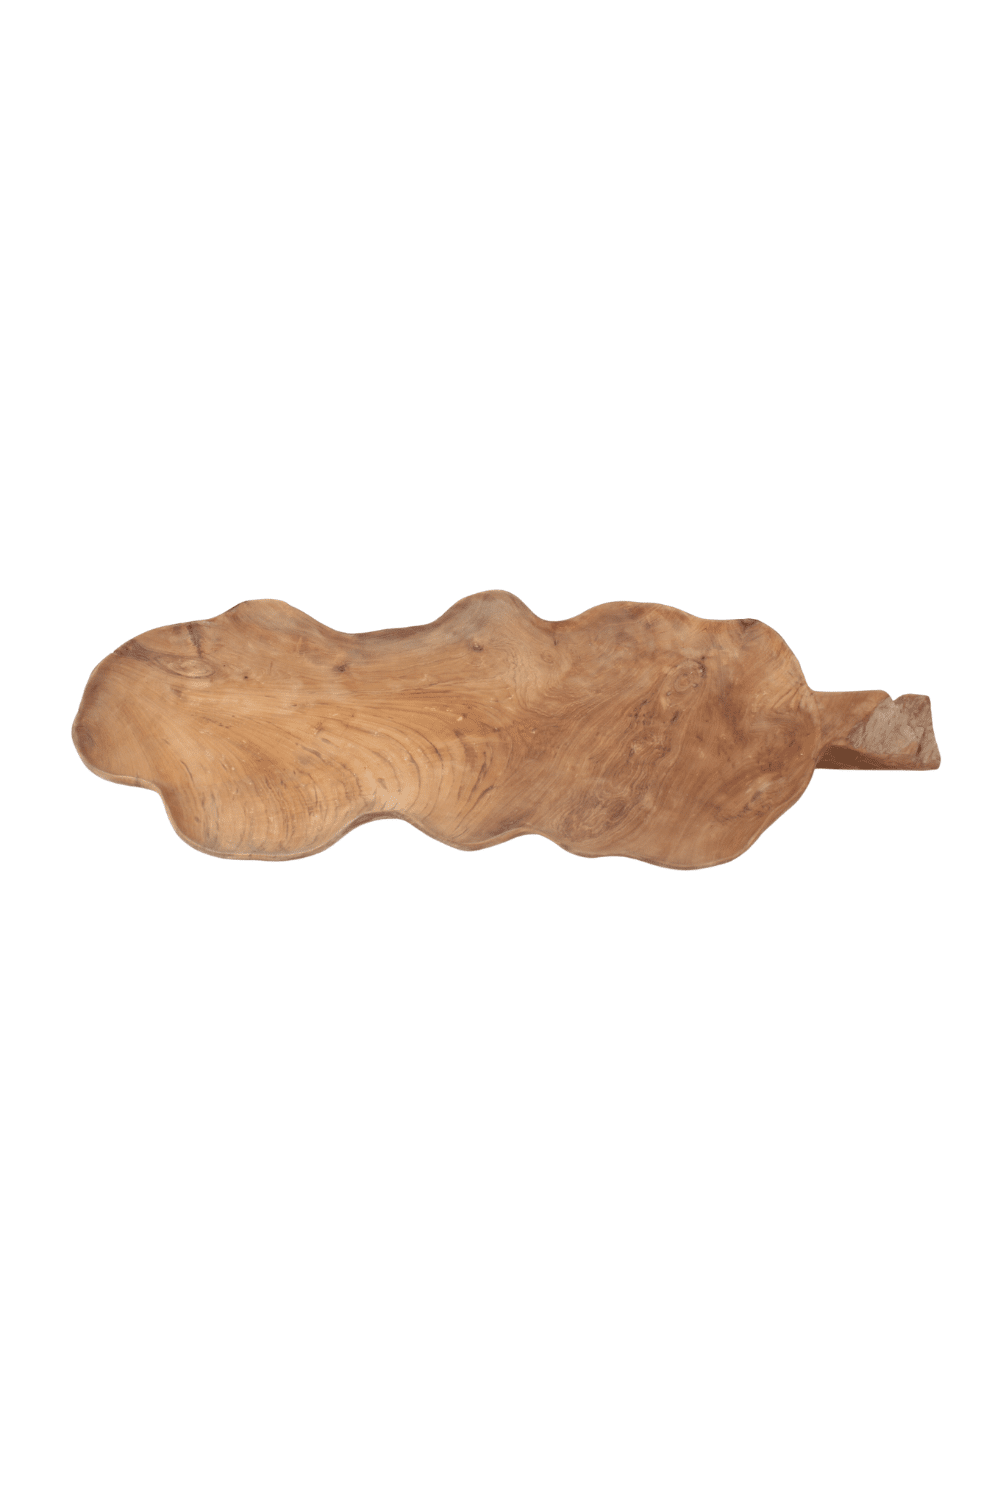 teak houten schaal hele grote schaal van hout voor op tafel in de vorm van een blad.